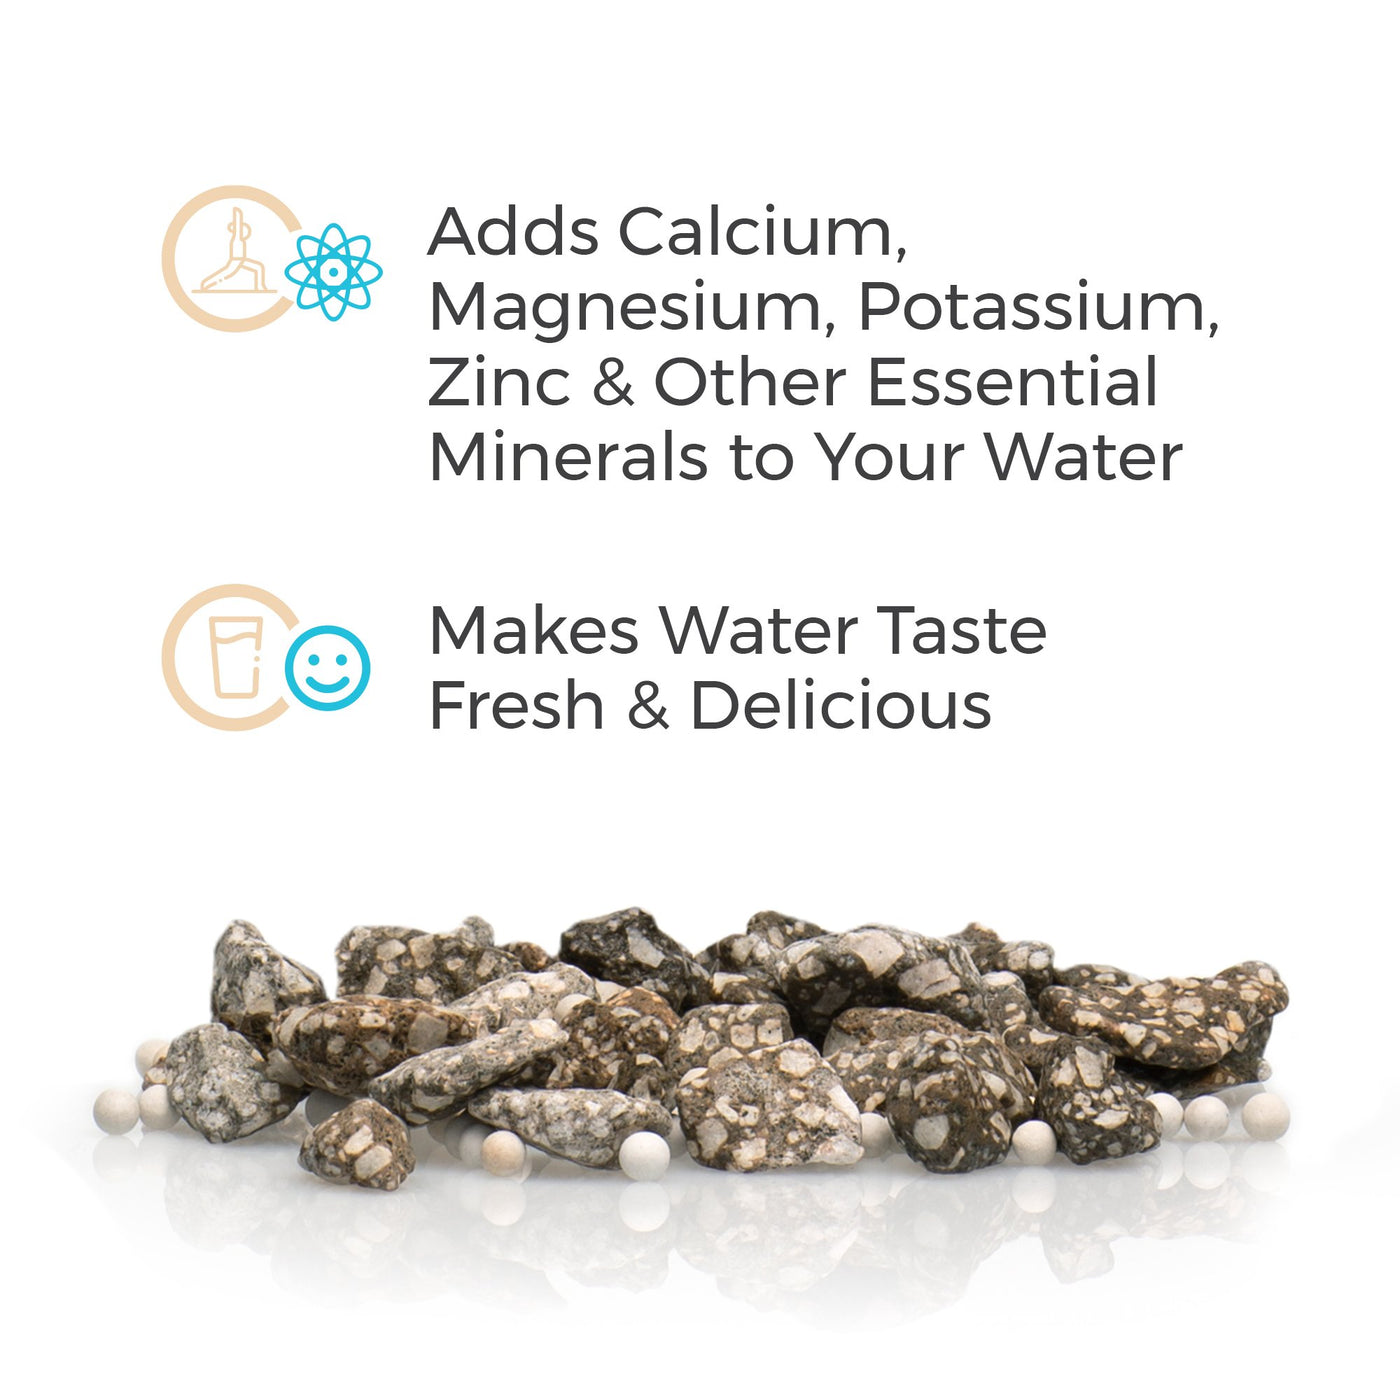 Les pierres minérales du système d'eau par gravité Santevia ajoutent du calcium, du magnésium, du potassium, du zinc et d'autres minéraux essentiels à votre eau.